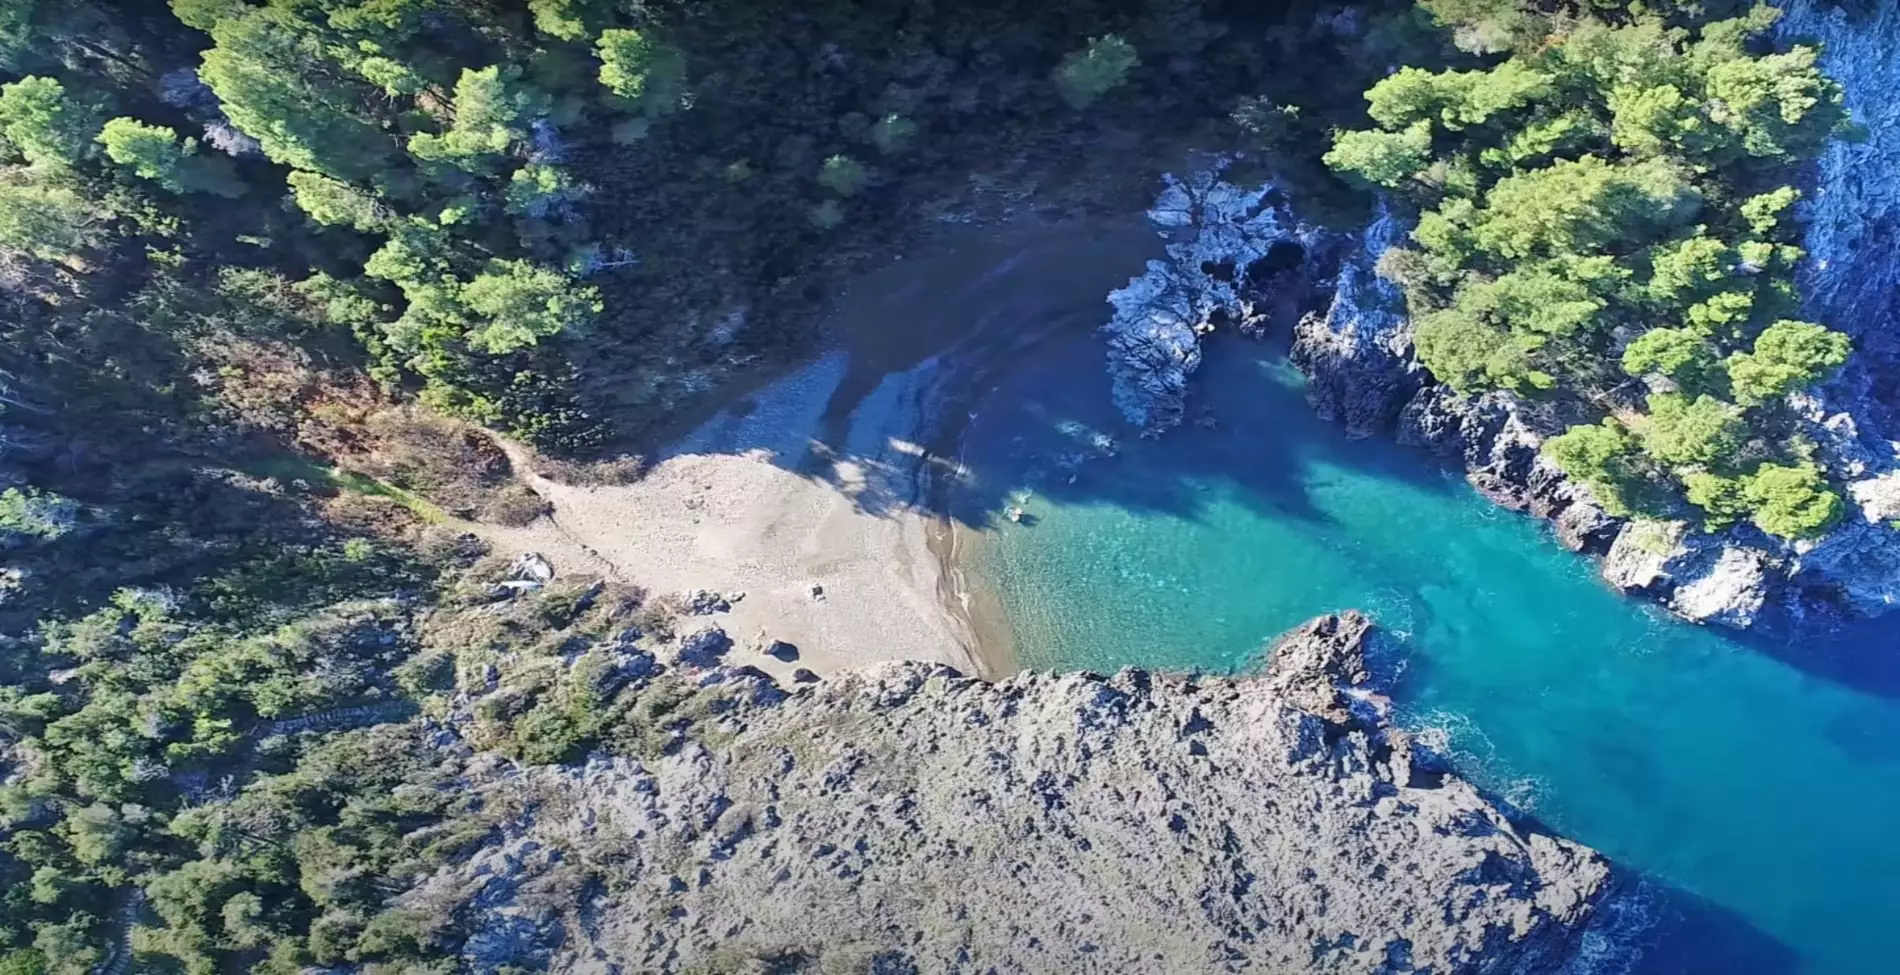 Στενό Λινάρι: Η εξωτική φυσική πισίνα στην Εύβοια